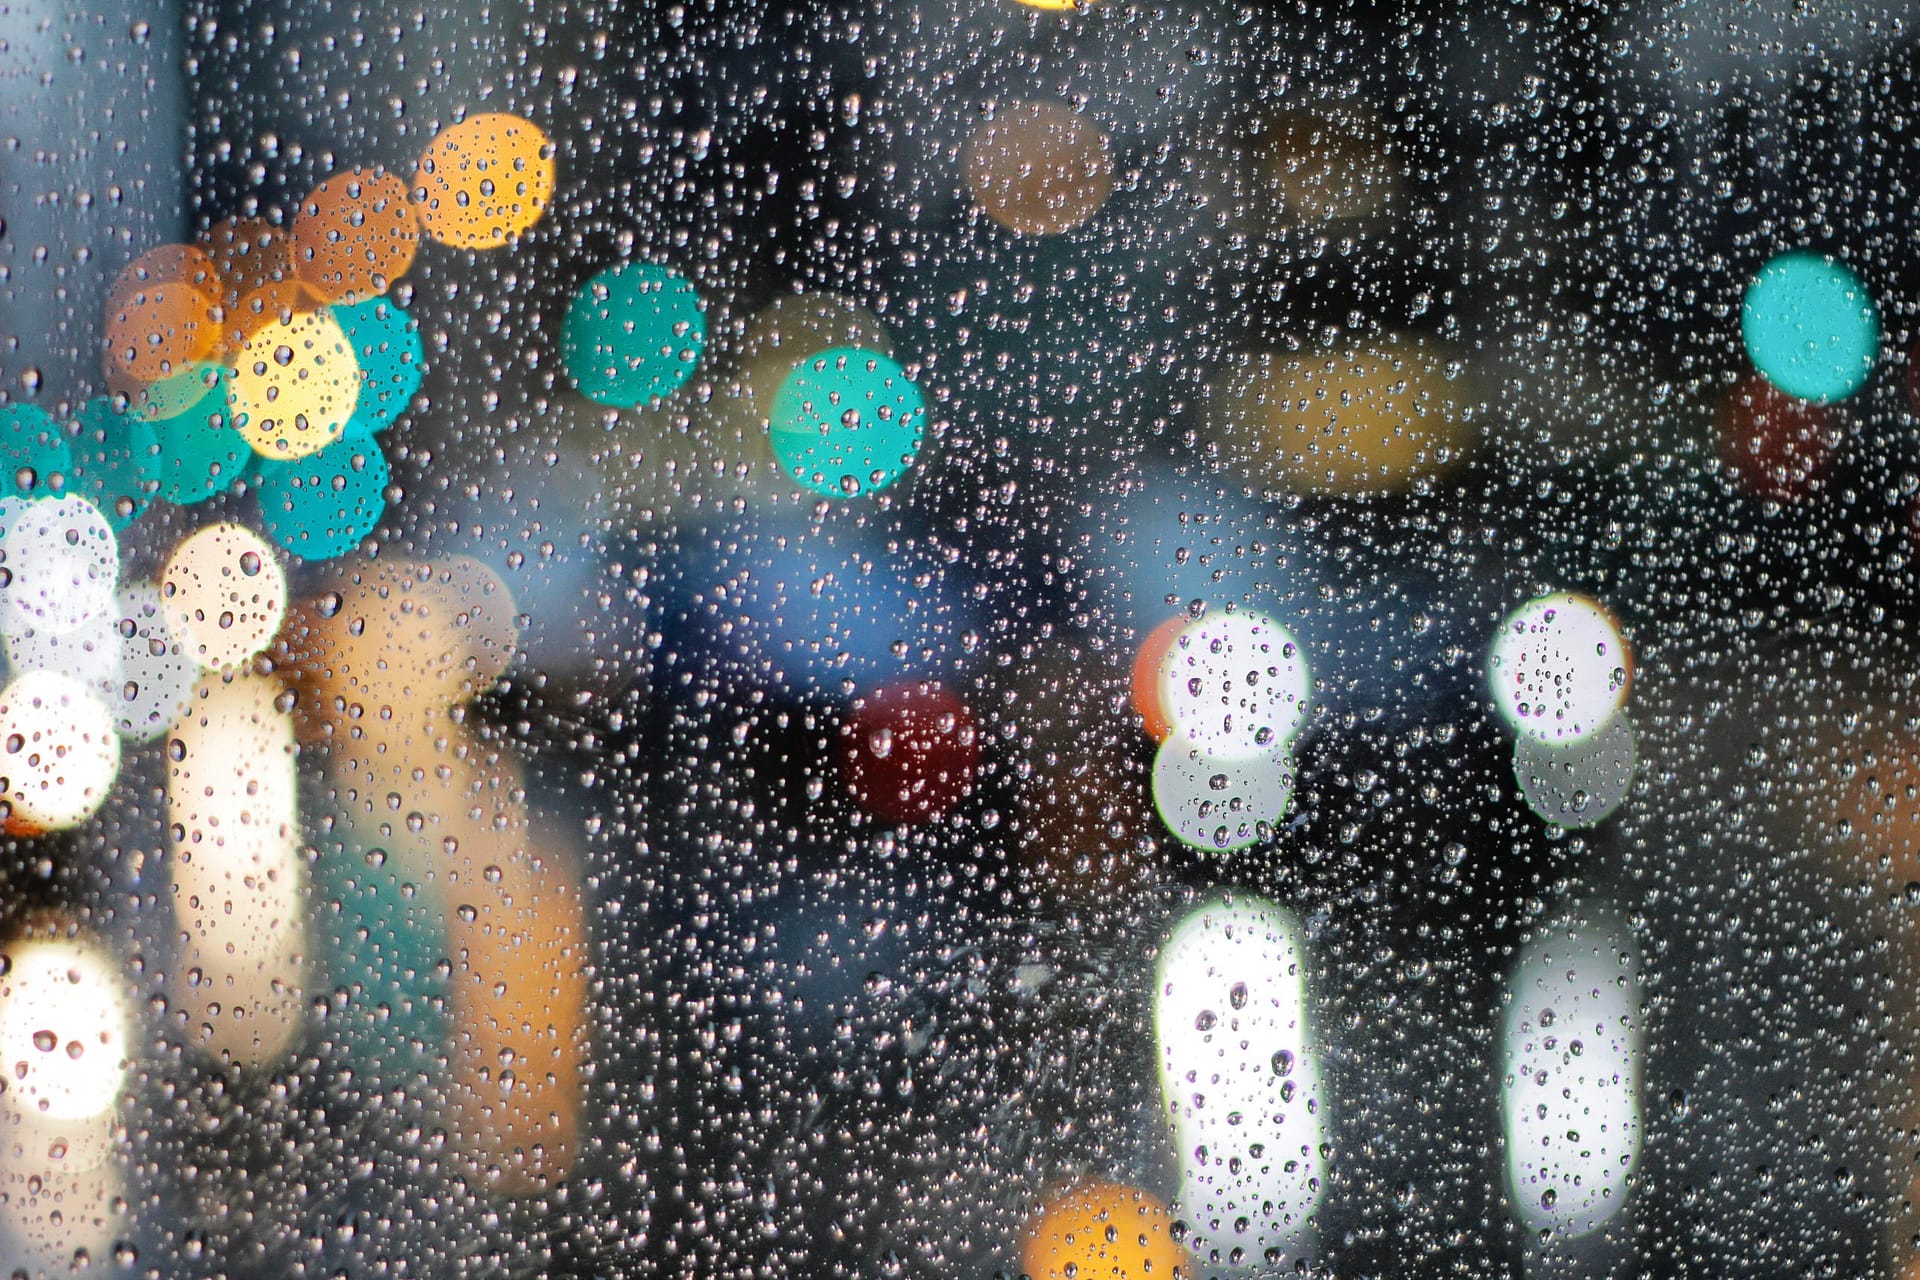 5 Rainy Day Photography Tips – Master the Art